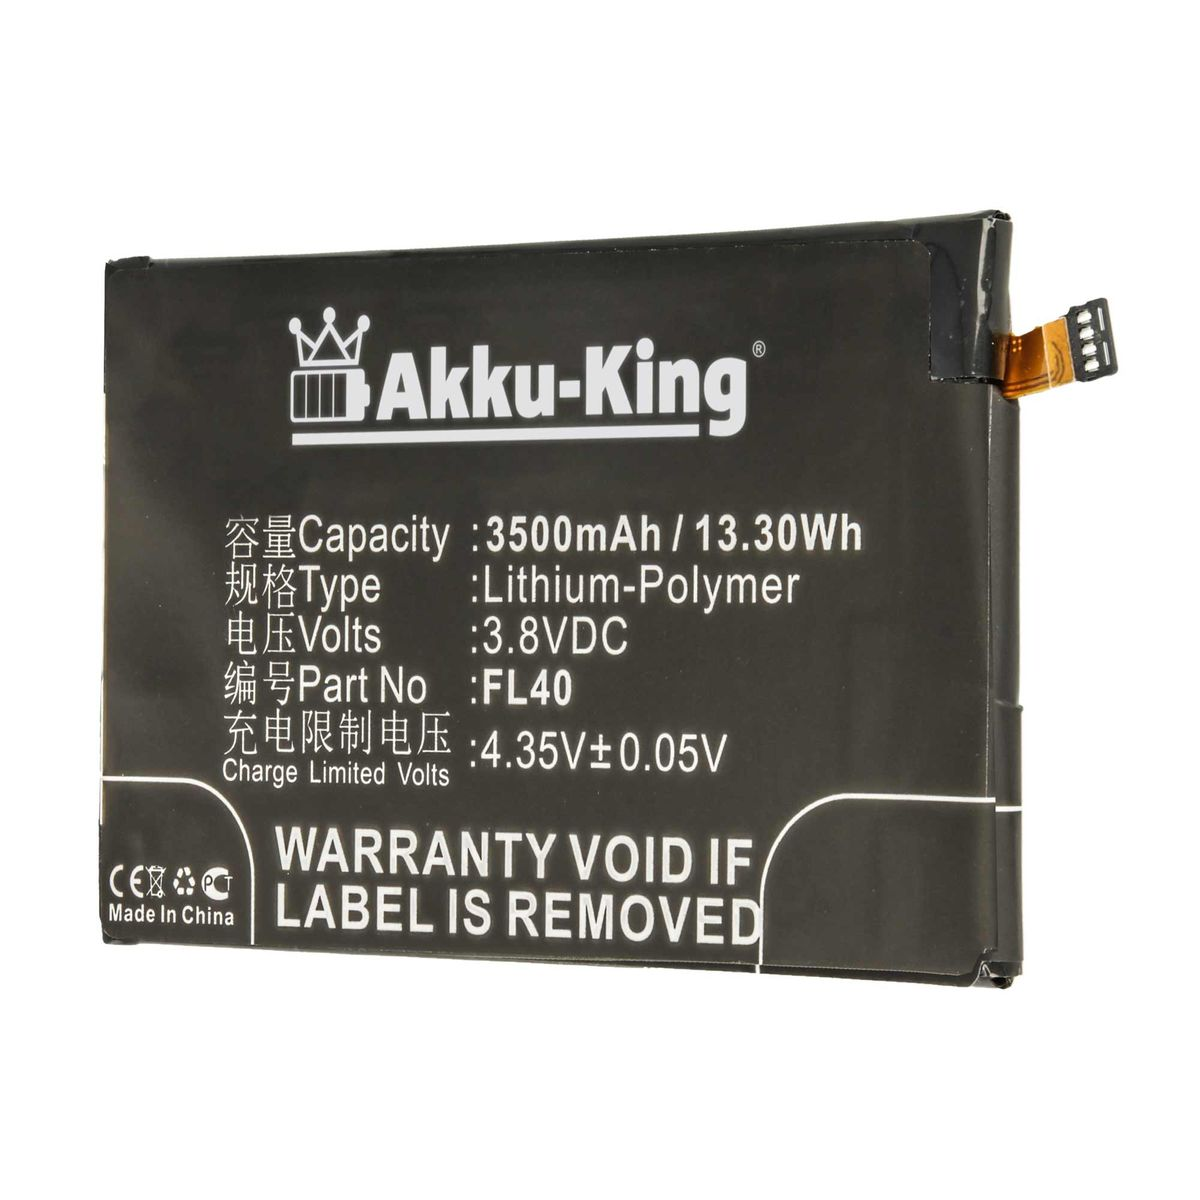 3.8 Motorola AKKU-KING Akku 3500mAh kompatibel FL40 Volt, mit Li-Polymer Handy-Akku,